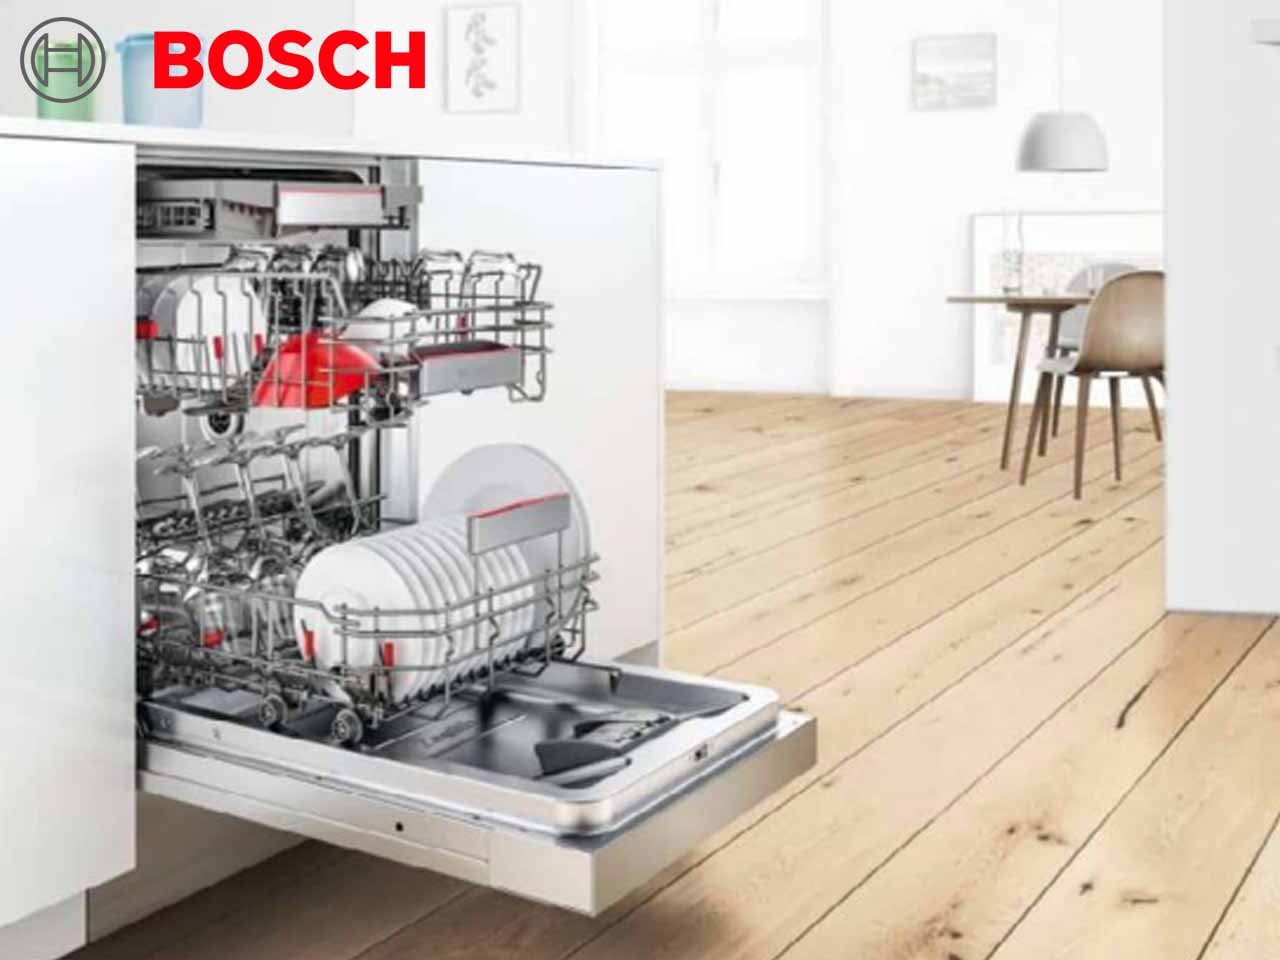 Bosch présente sa nouvelle gamme de lave-vaisselle économes, performants et connectés !